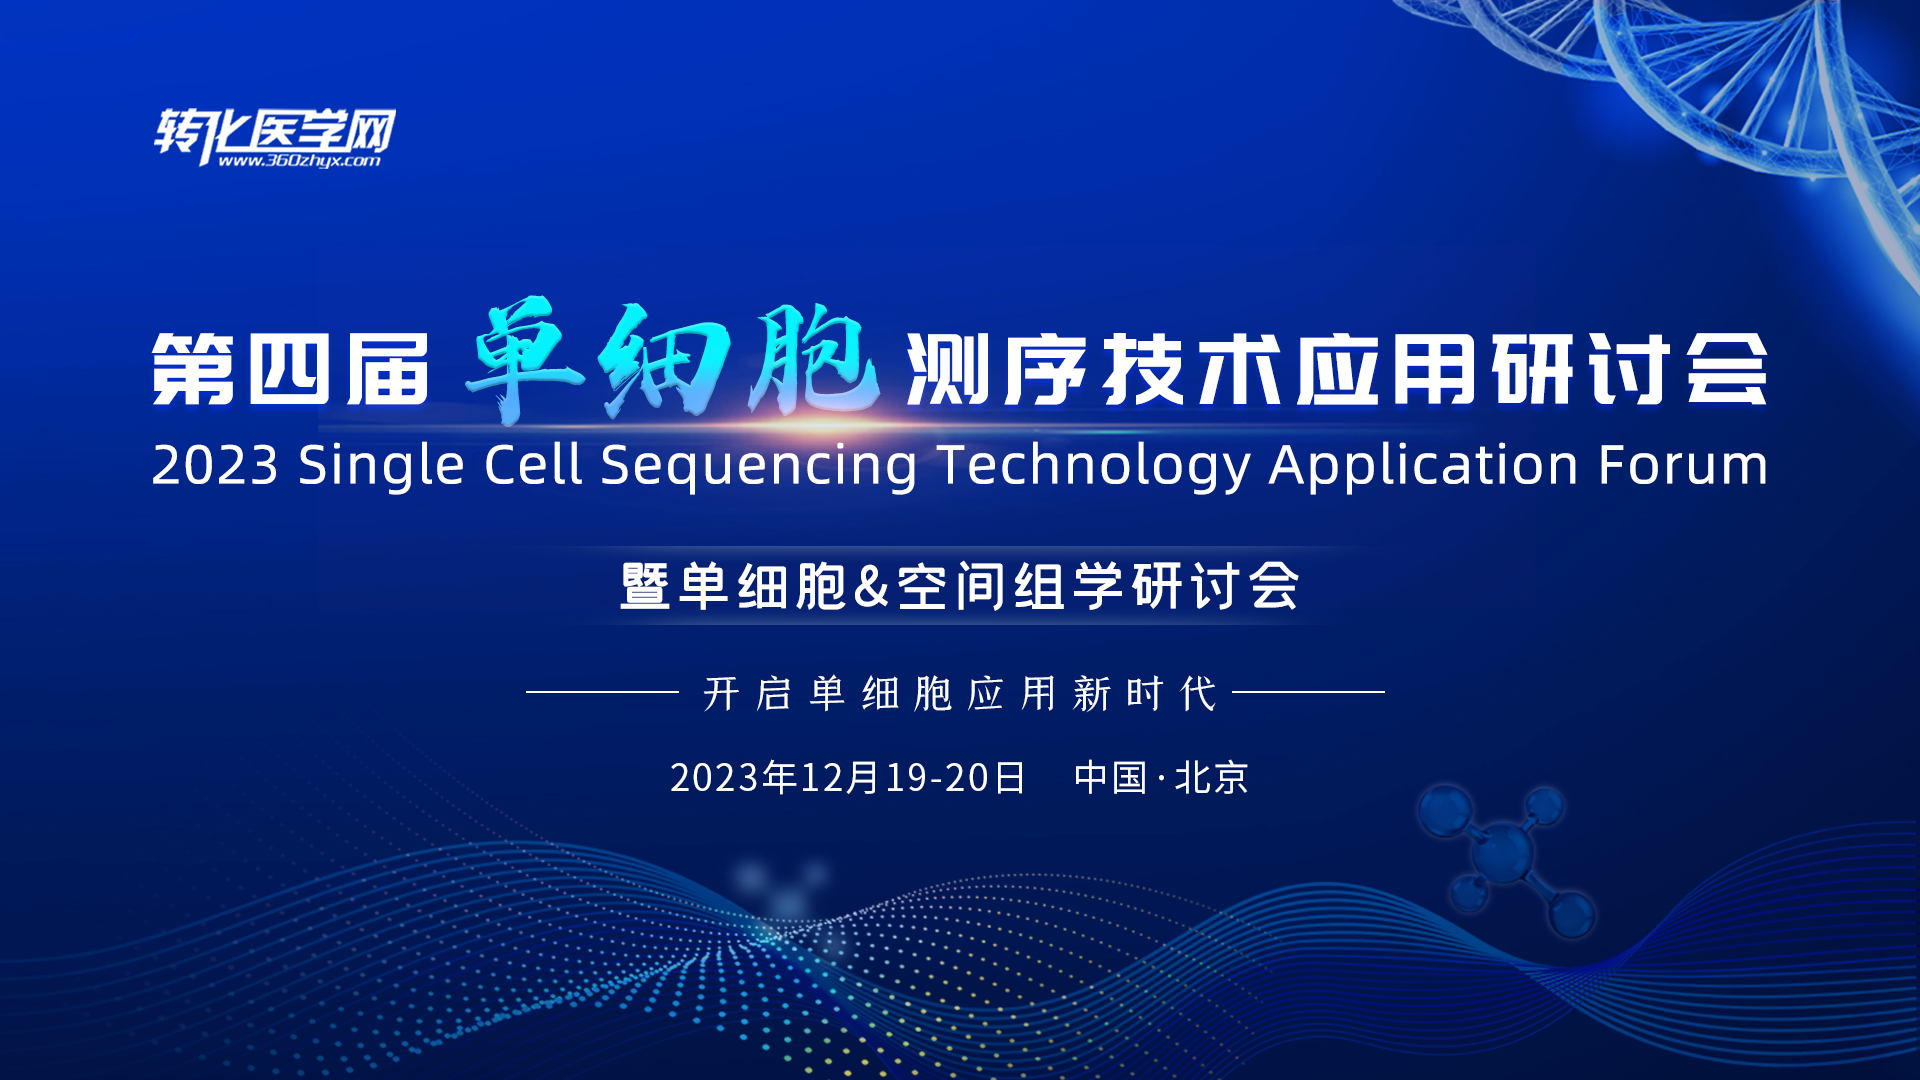 跃真生物邀请您参加2023“第四届单细胞测序技术应用研讨会暨单细胞&空间组学研讨会”